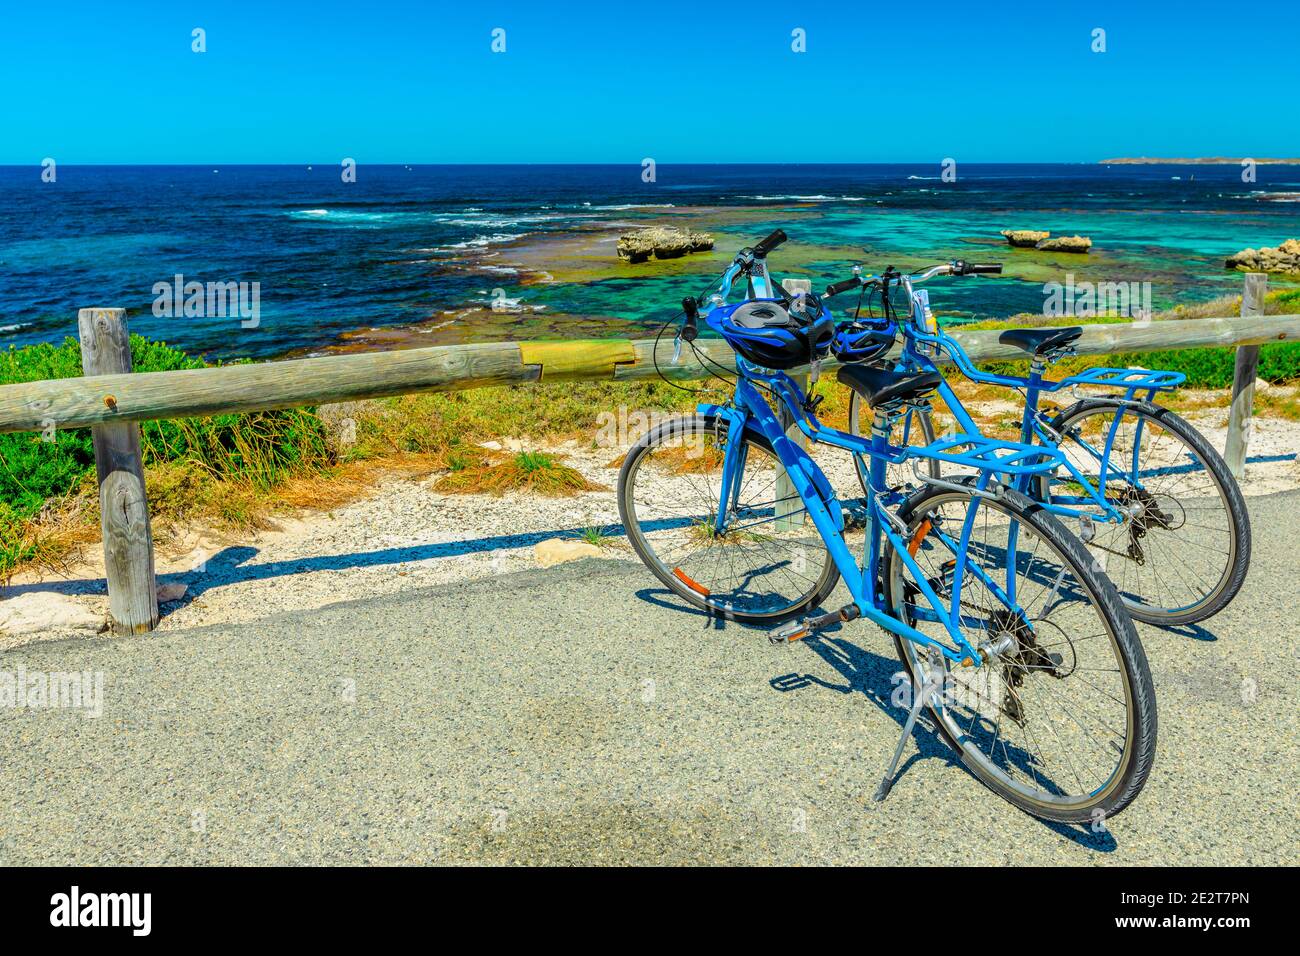 Vélos touristiques garés à Parker point, un belvédère surplombant les plages tropicales et blanches immaculées de l'île Rottnest en Australie occidentale, une île populaire Banque D'Images